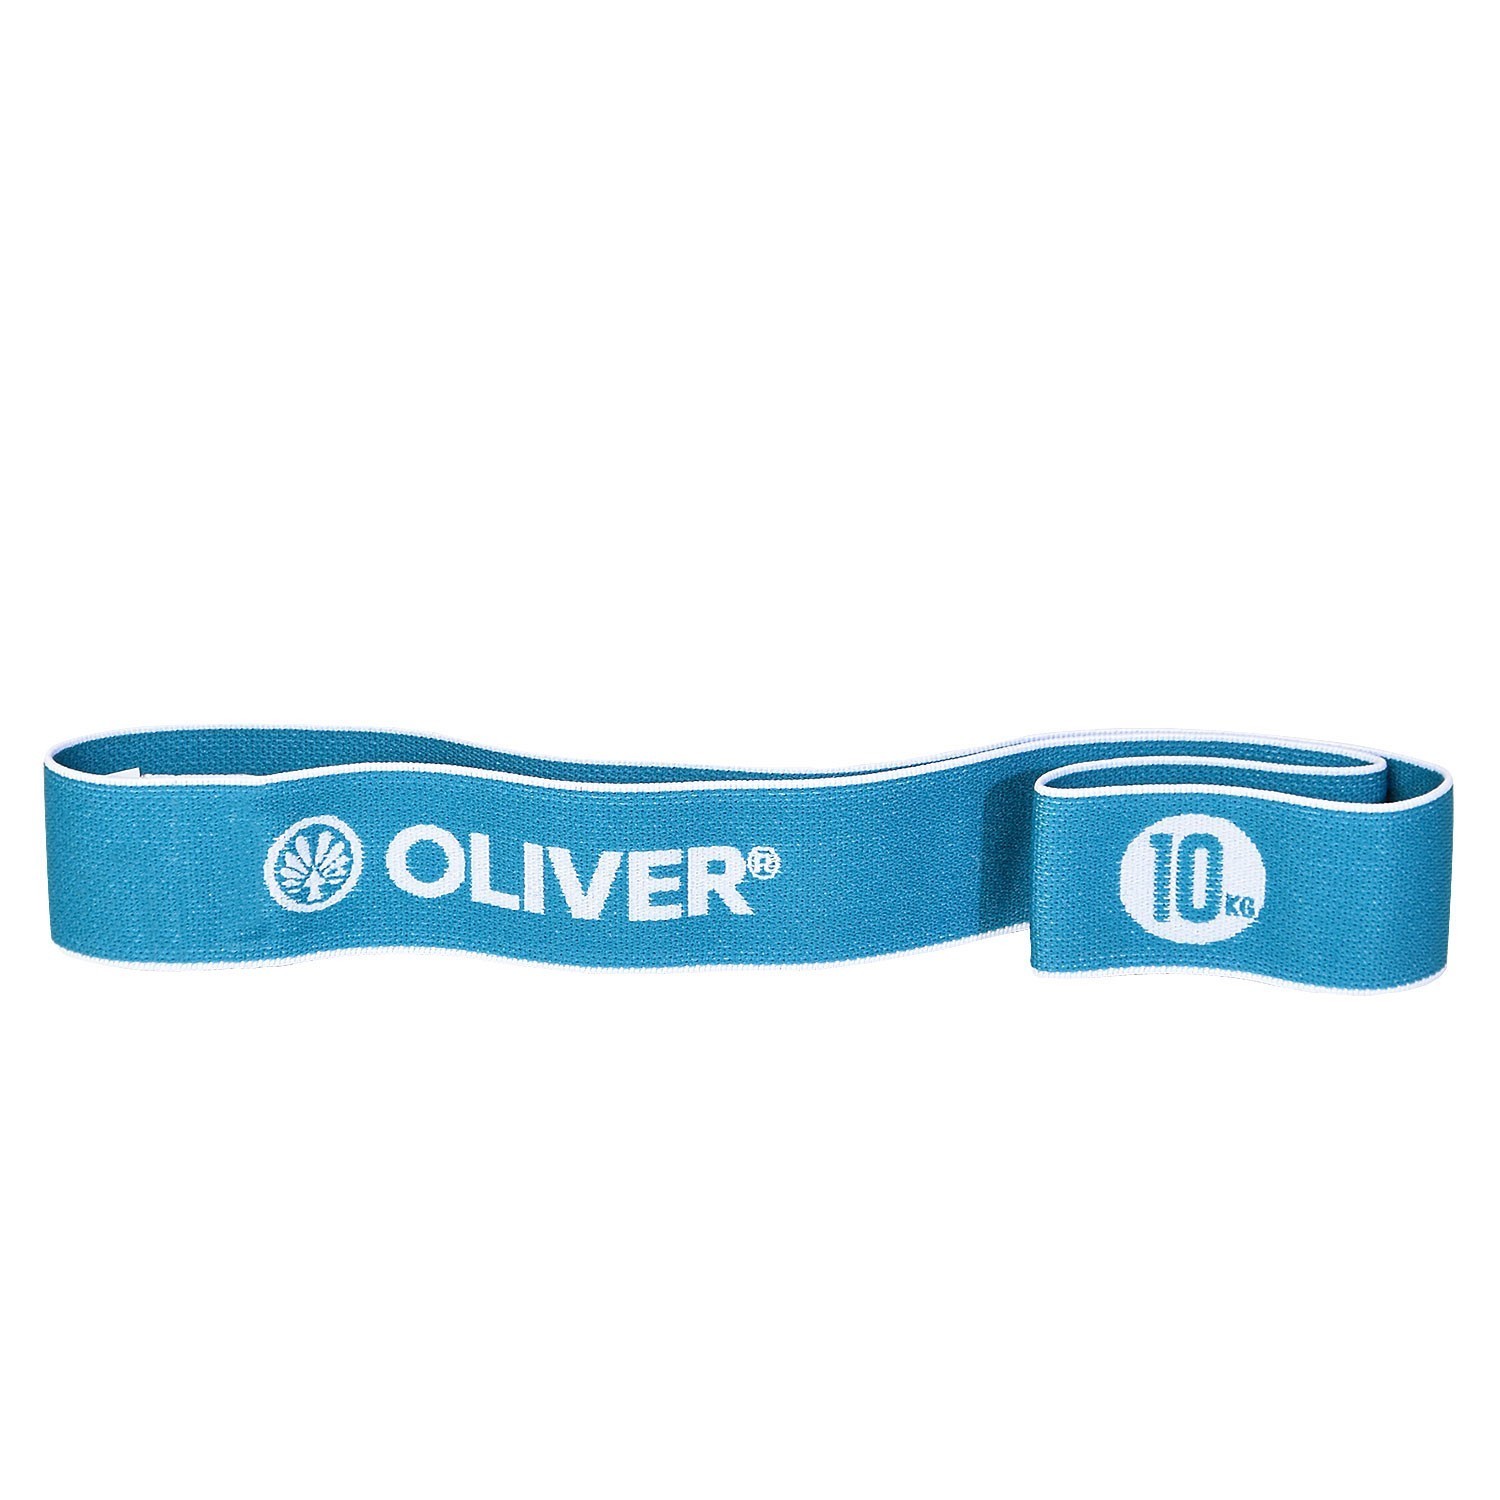 Oliver 10er Paket Tex-O Miniband -  mittel 10kg